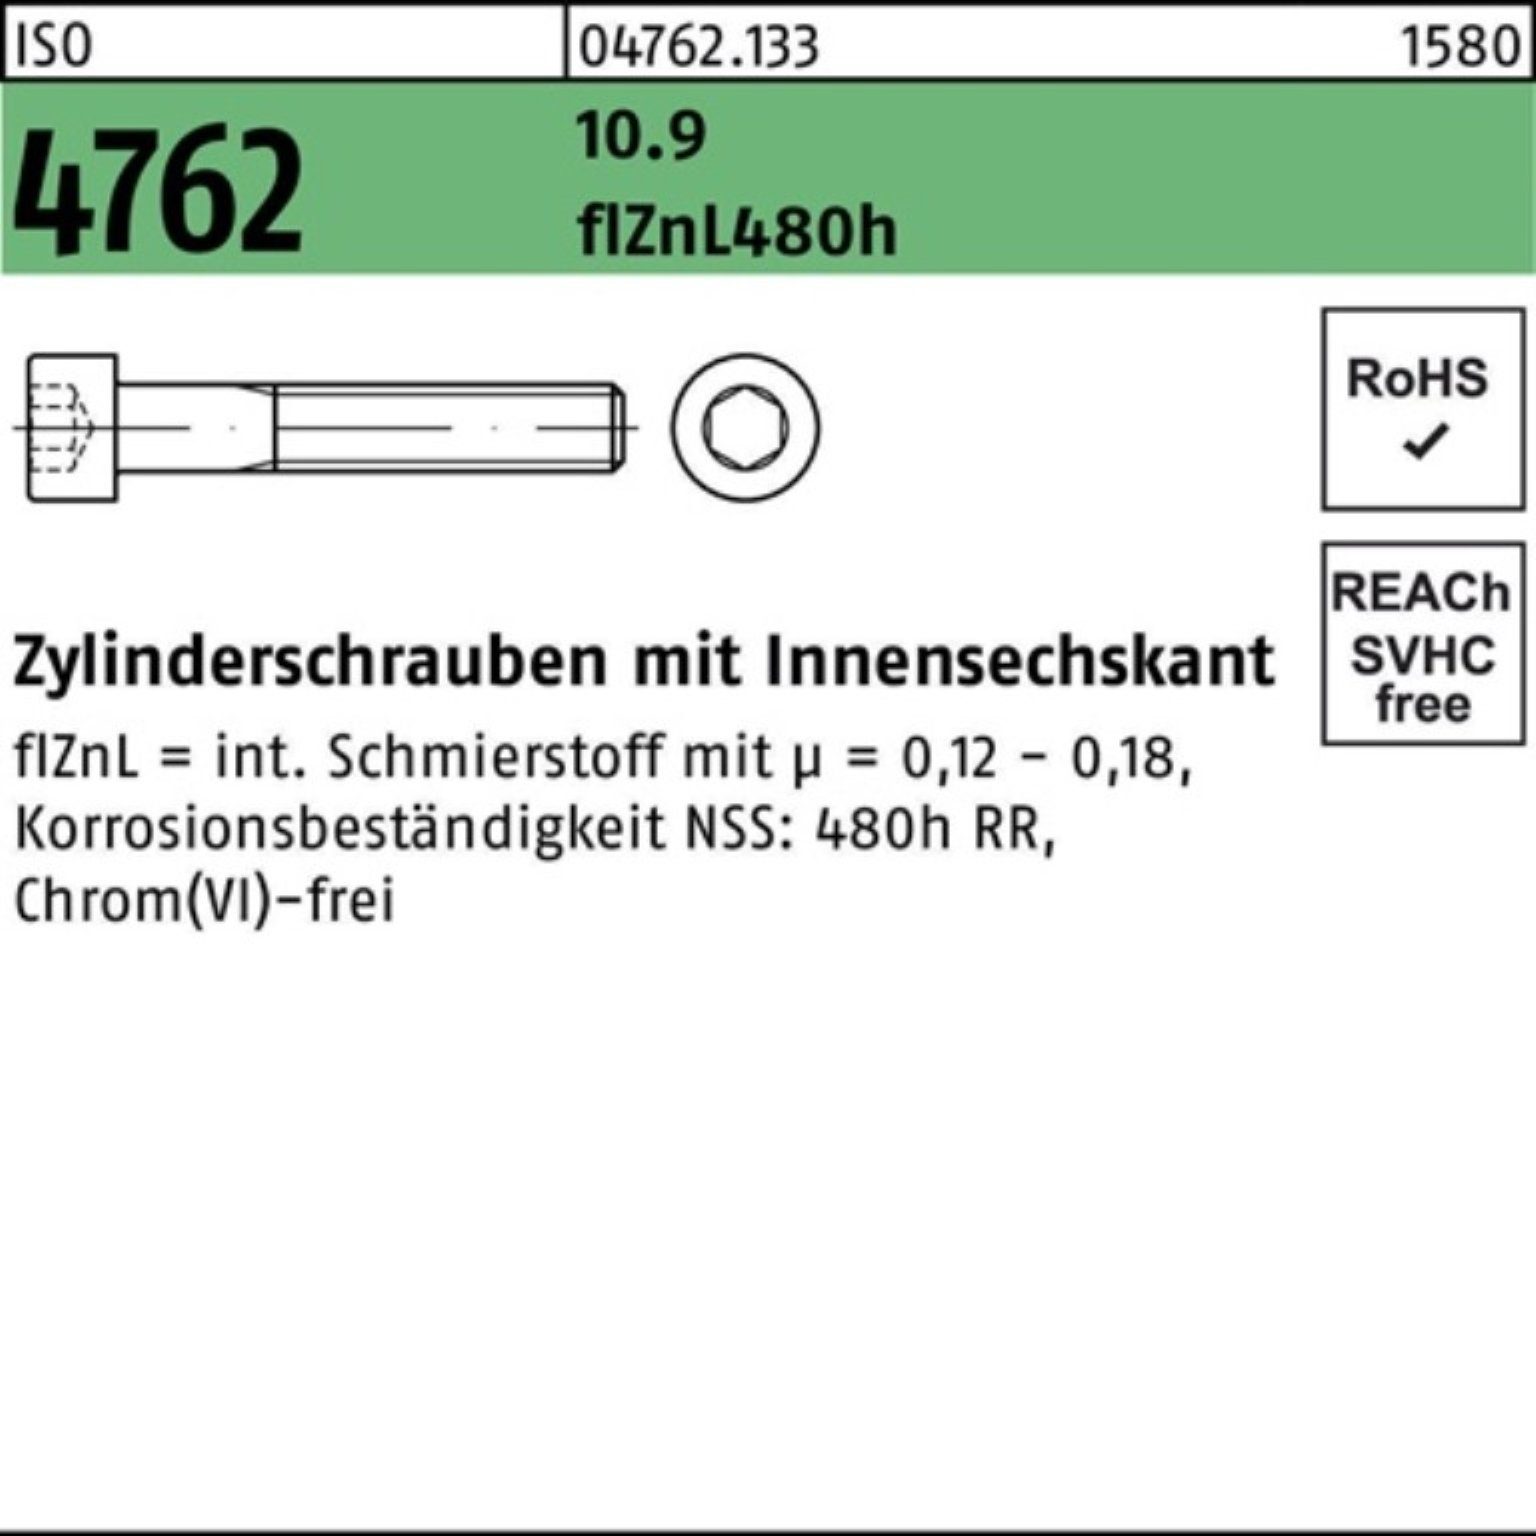 Pack 10.9 ISO Zylinderschraube Reyher Innen-6kt Zylinderschraube M6x16 500er 4762 zinklamellen